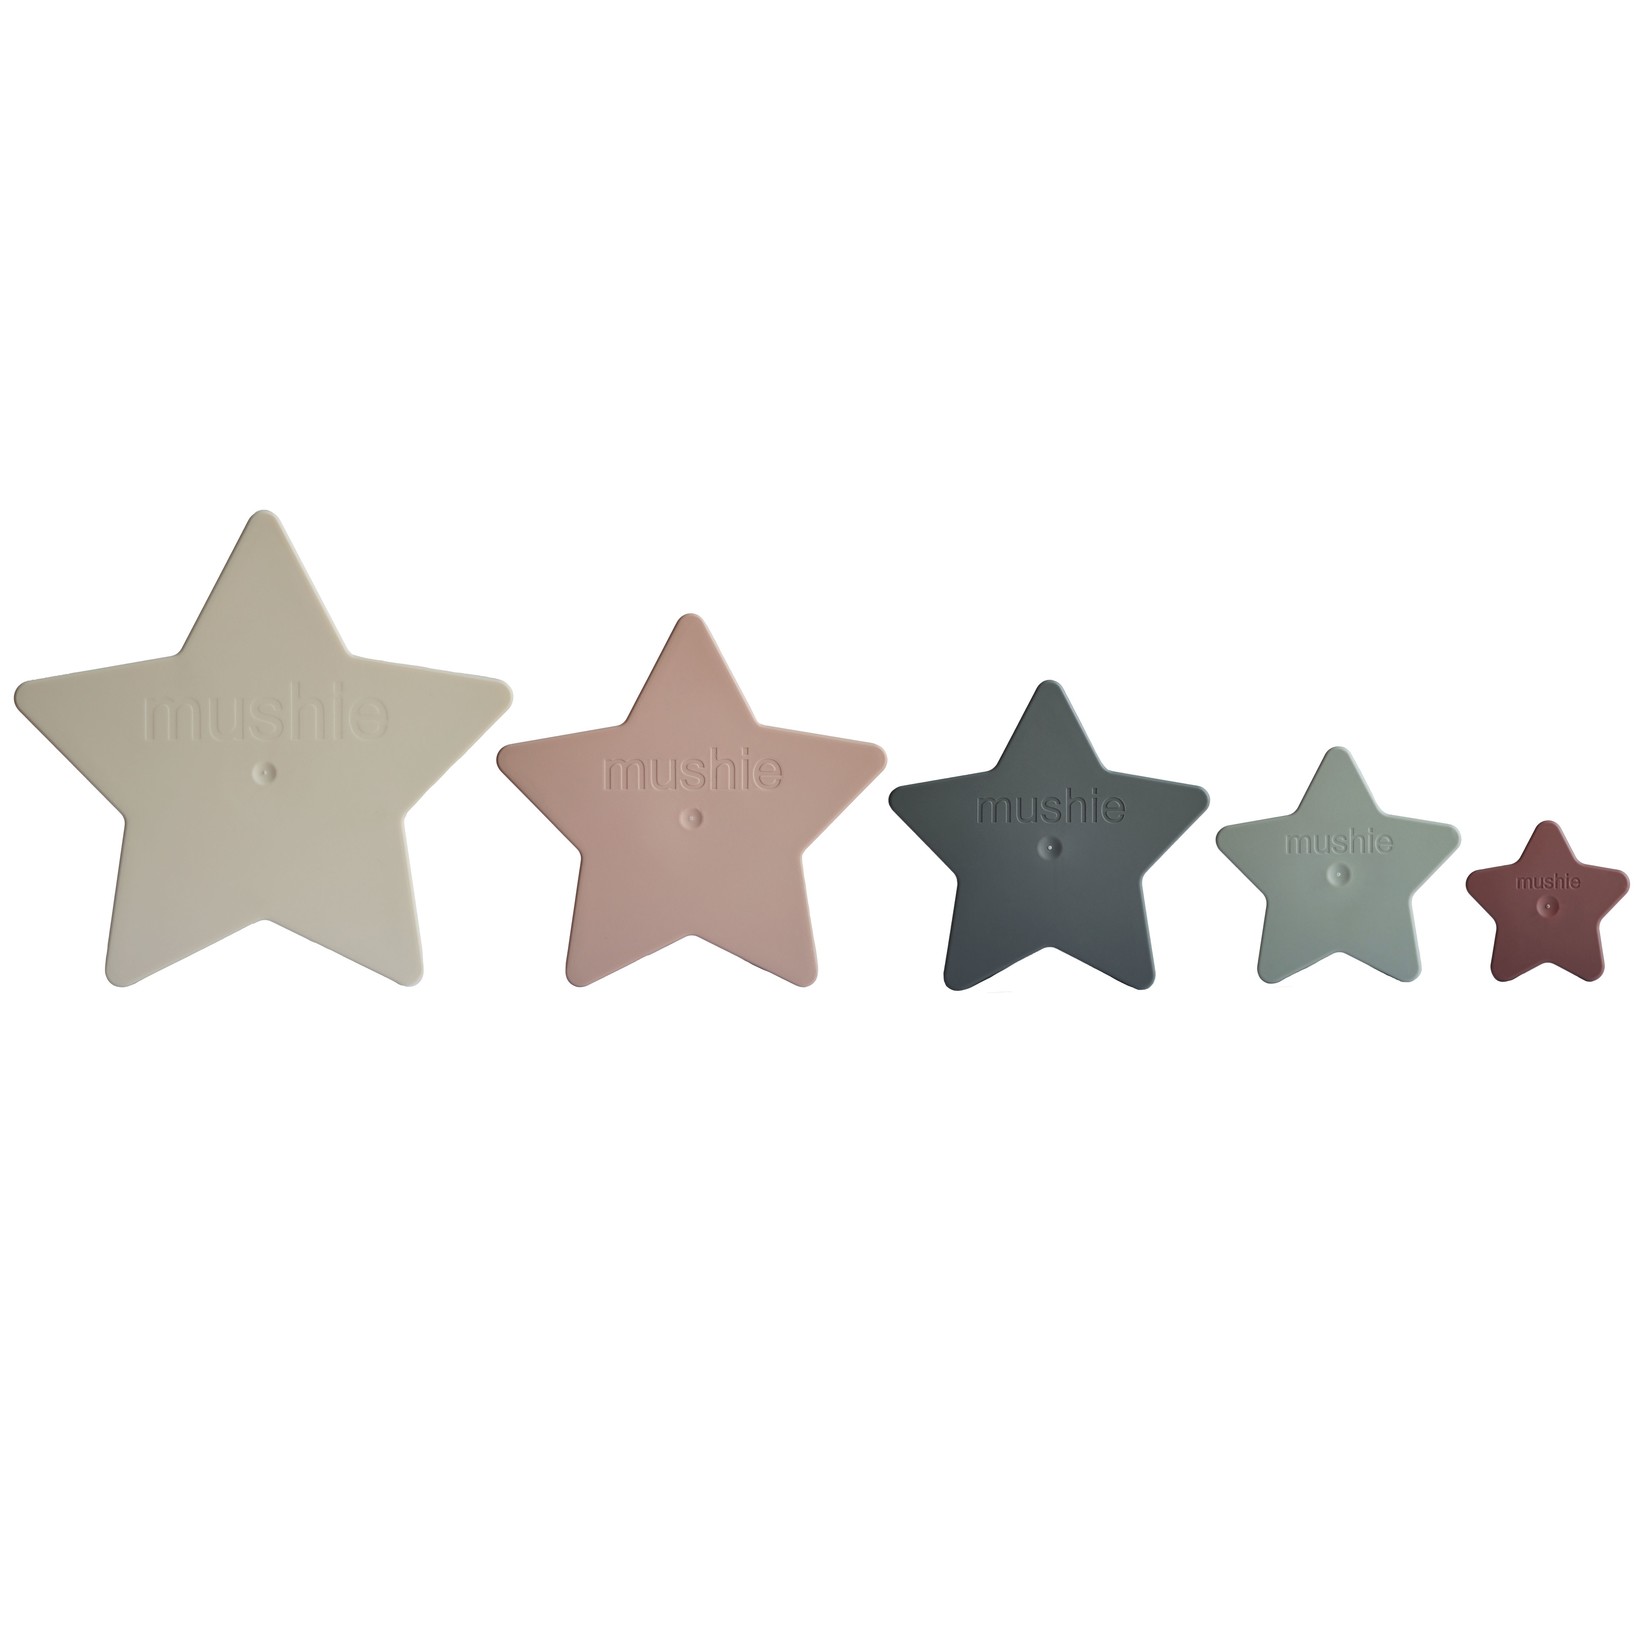 Mushie Mushie - Nesting star